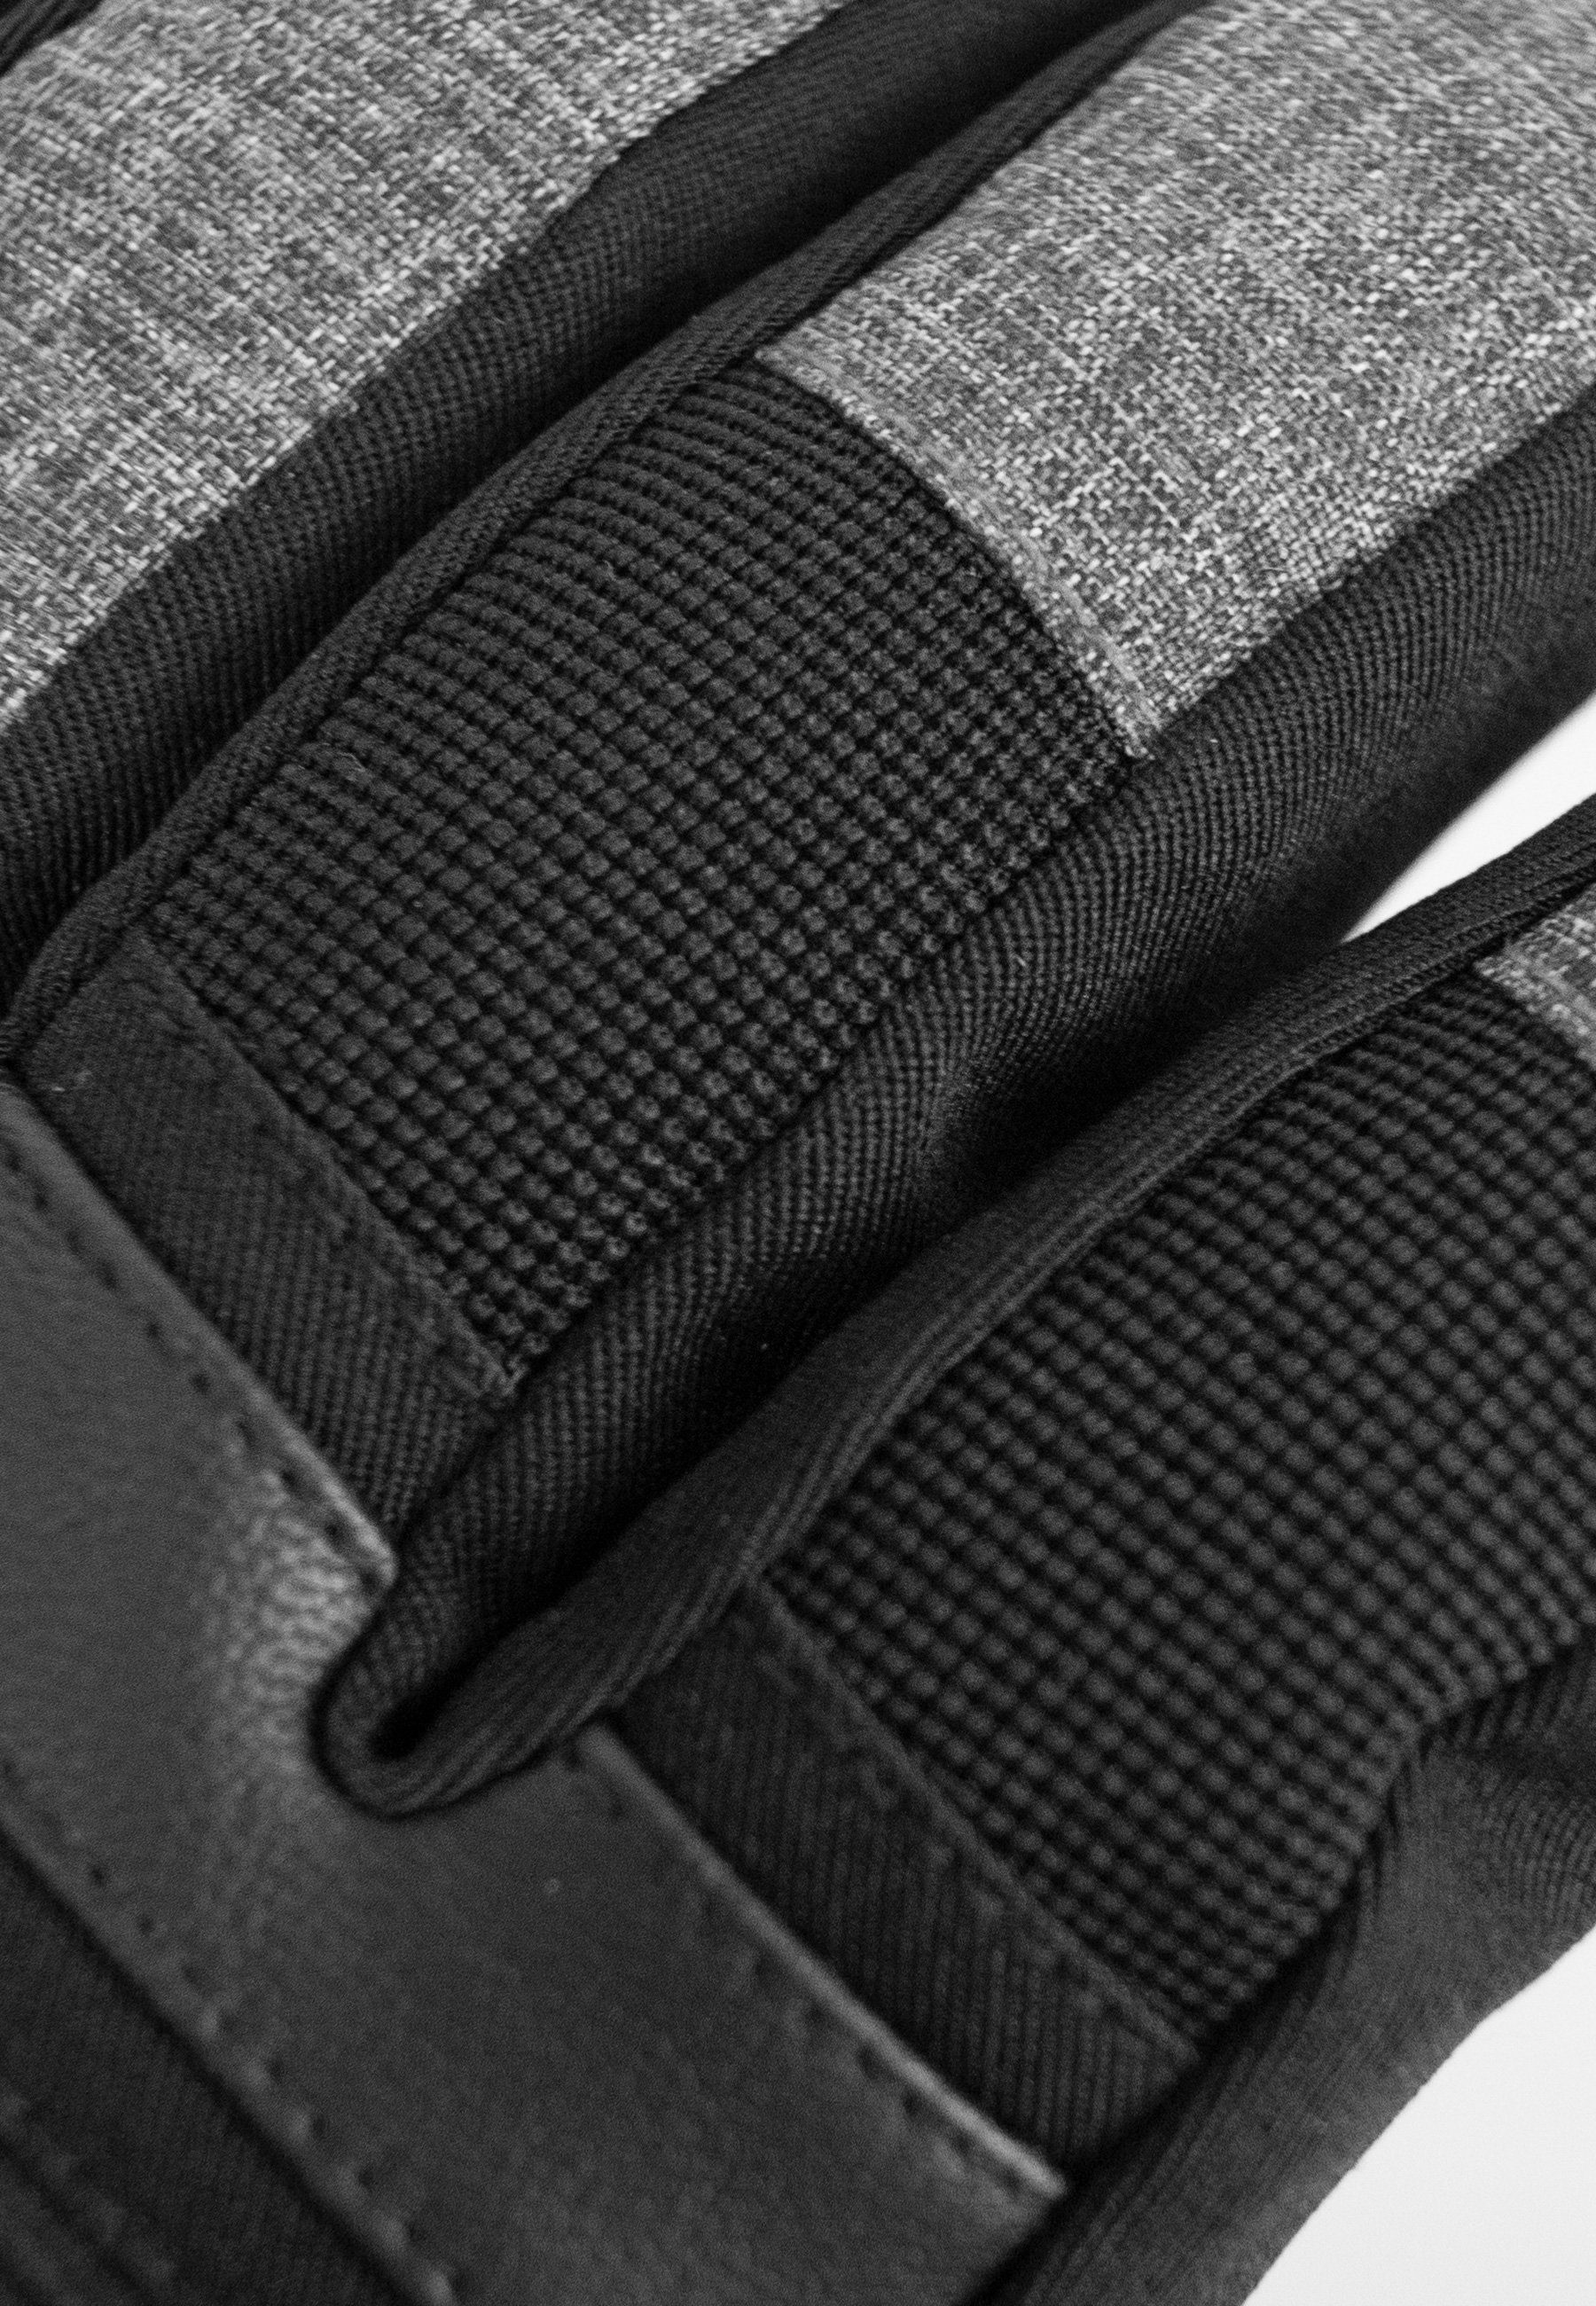 Reusch Skihandschuhe Venom atmungsaktivem Material XT schwarz-grau aus R-TEX® wasserdichtem und